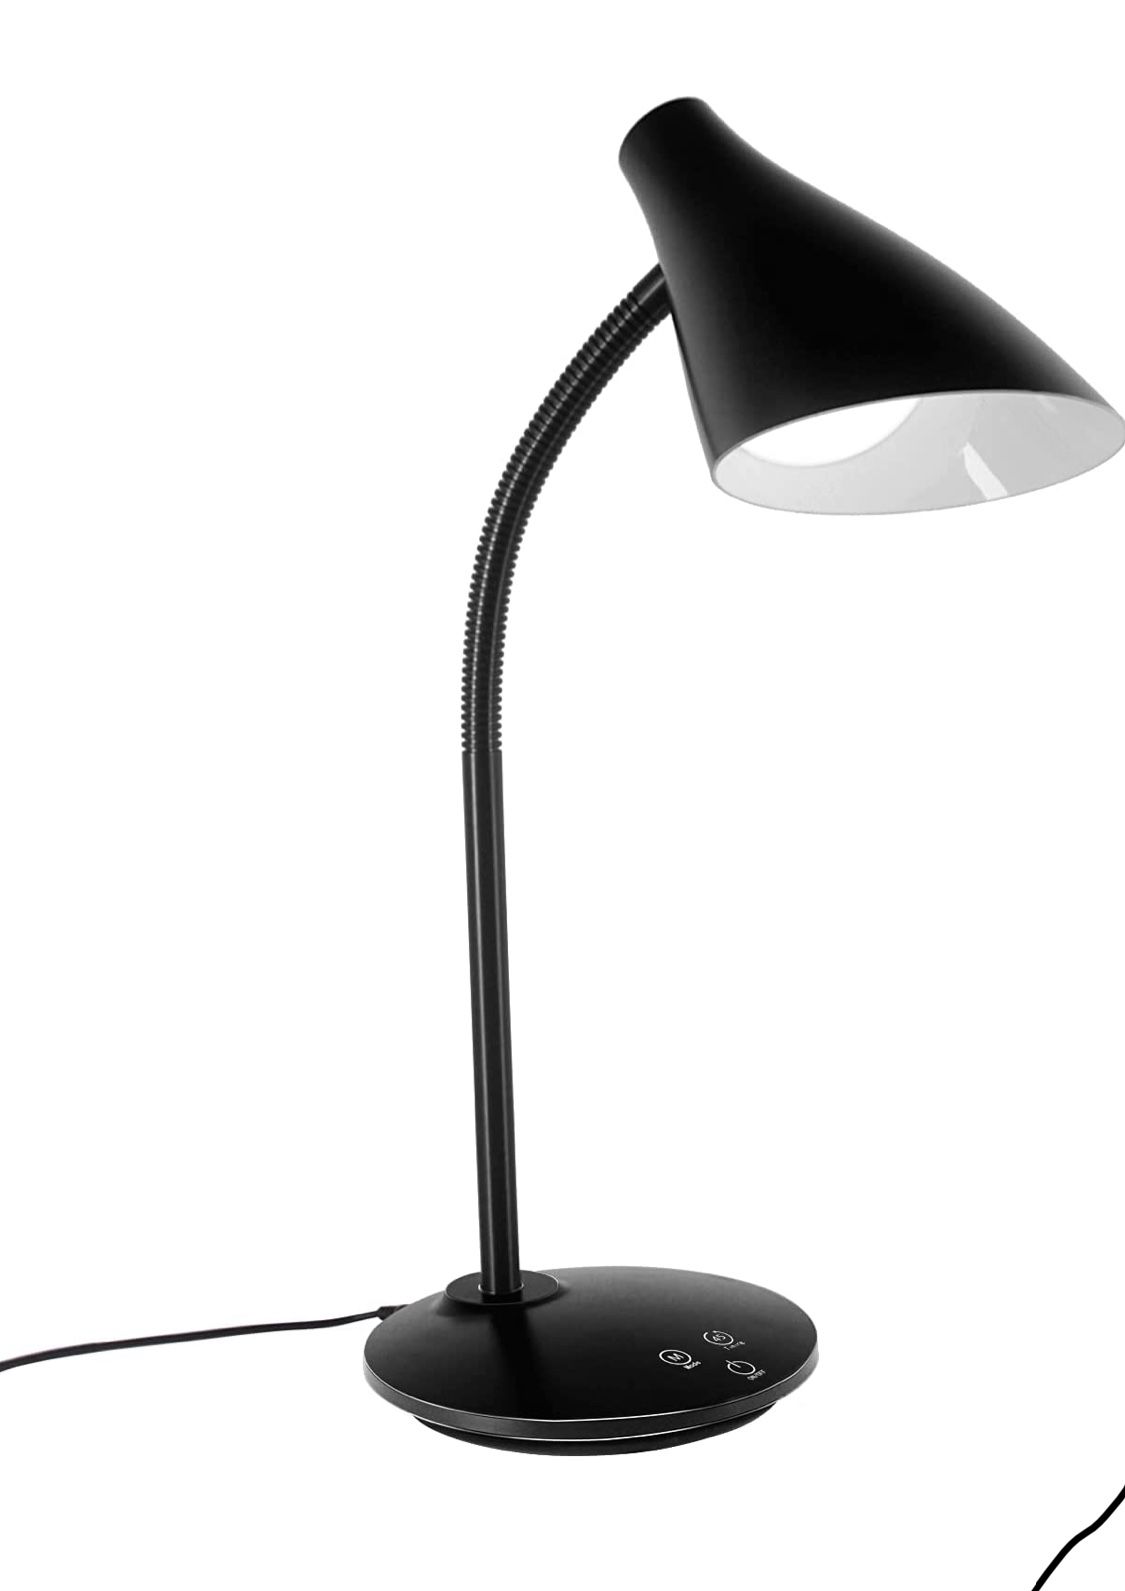 Led Desk Lamp,Multifuntional Desk Lamps for Home Office College Dorm Room, Goose Neck Desk Light, USB Port, 3 Brightness Levels, 5 Color Temperature, 